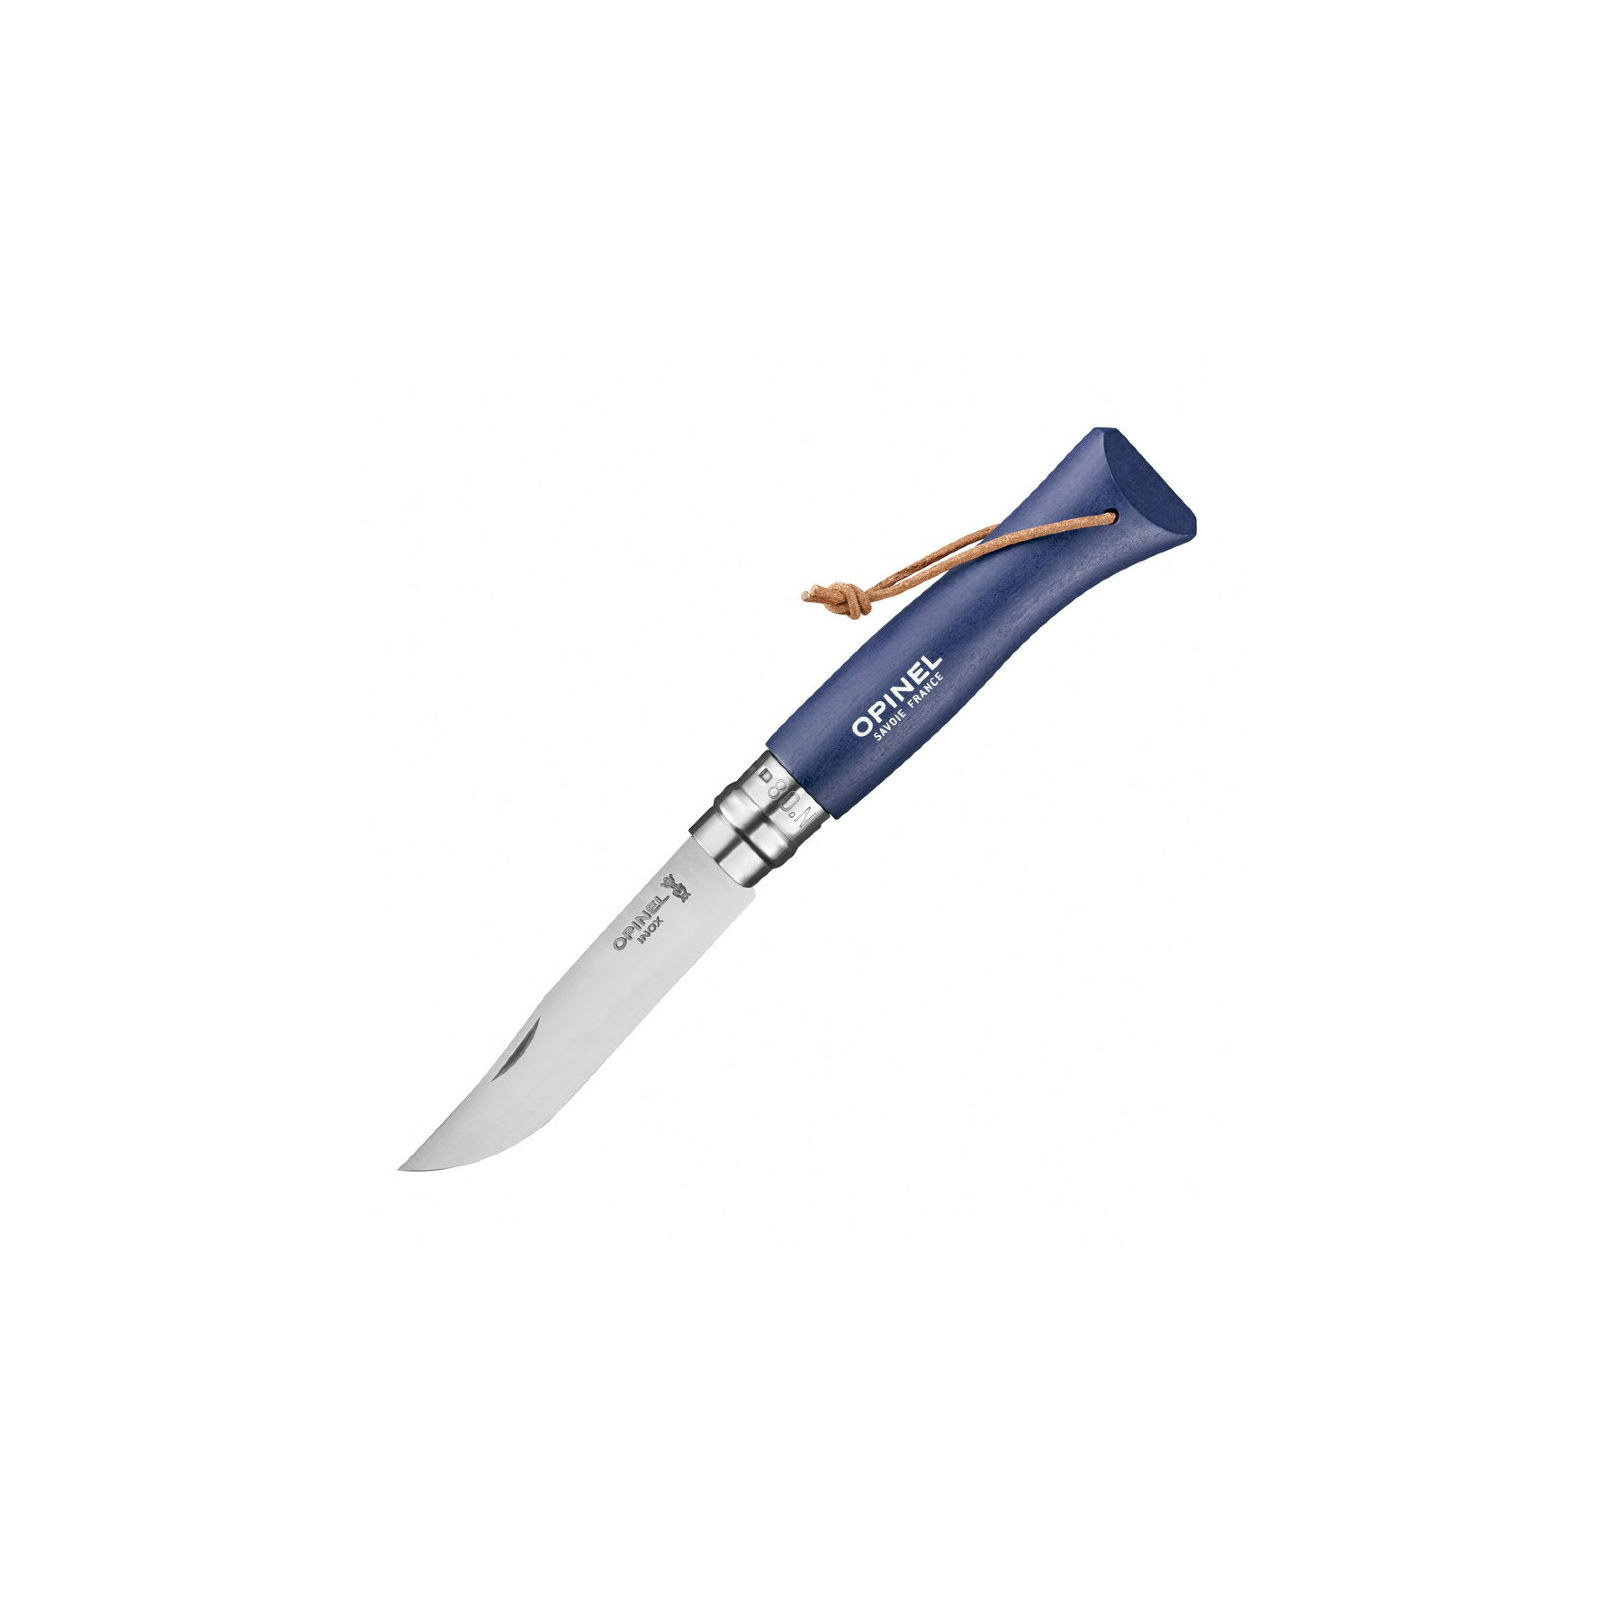 Нож Opinel №8 Inox VRI Trekking коричневый, без упаковки (002211)